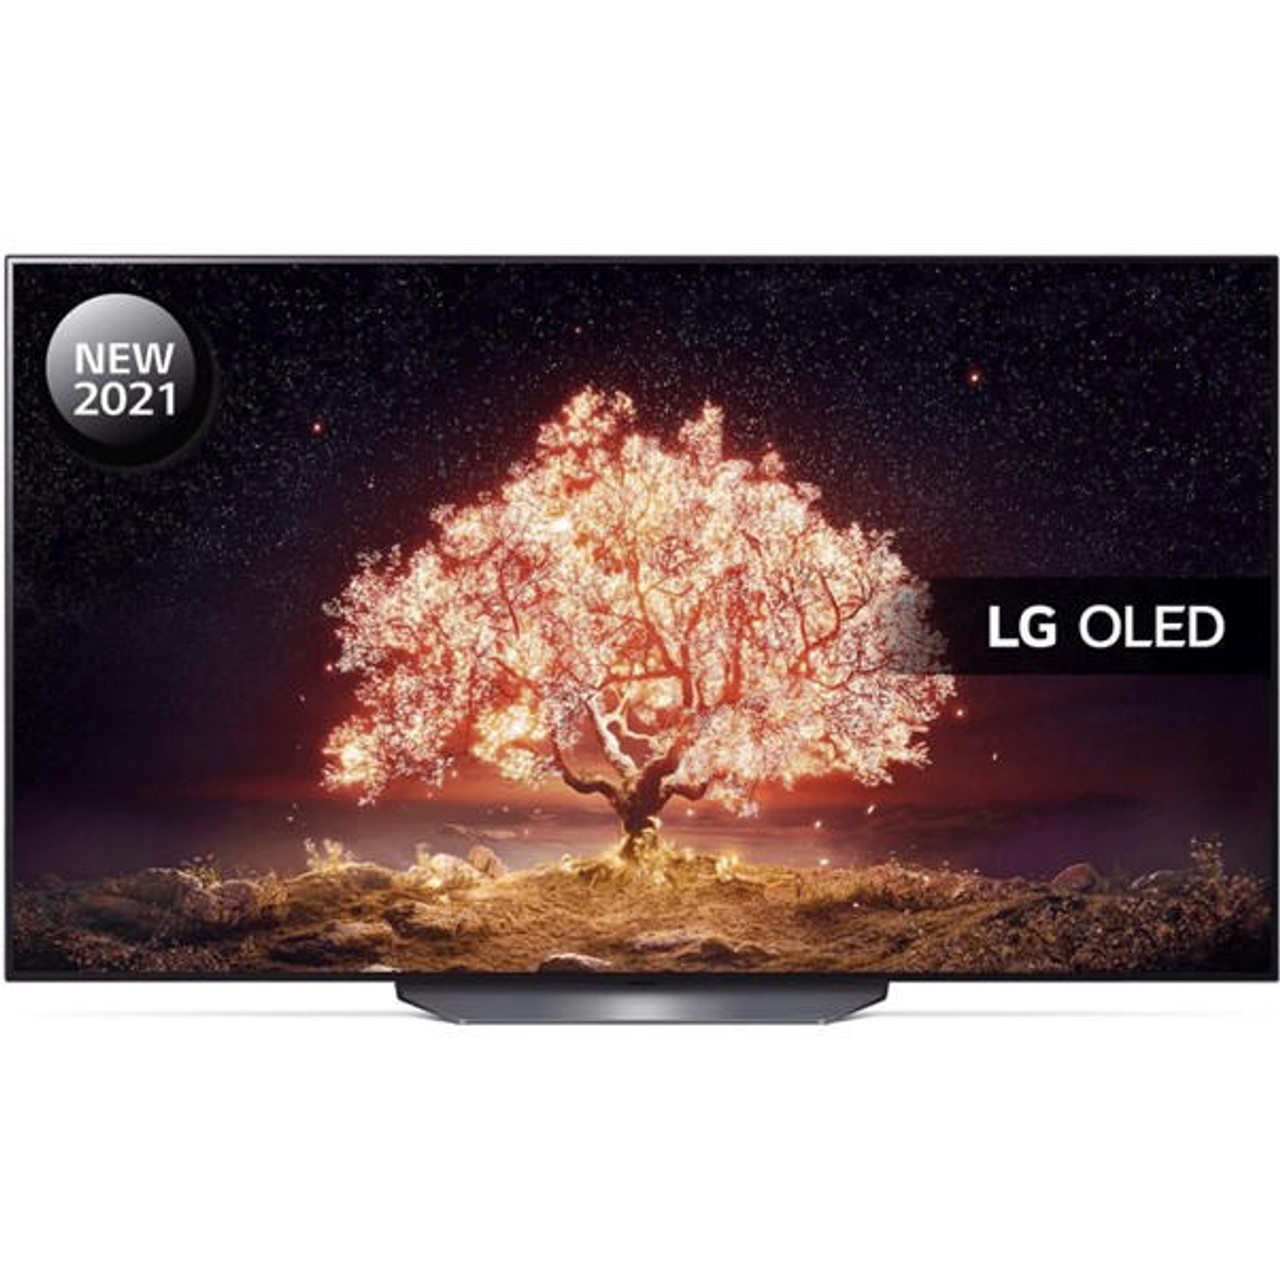 LG 65 OLED 4K Ultra HD HDR Smart TV